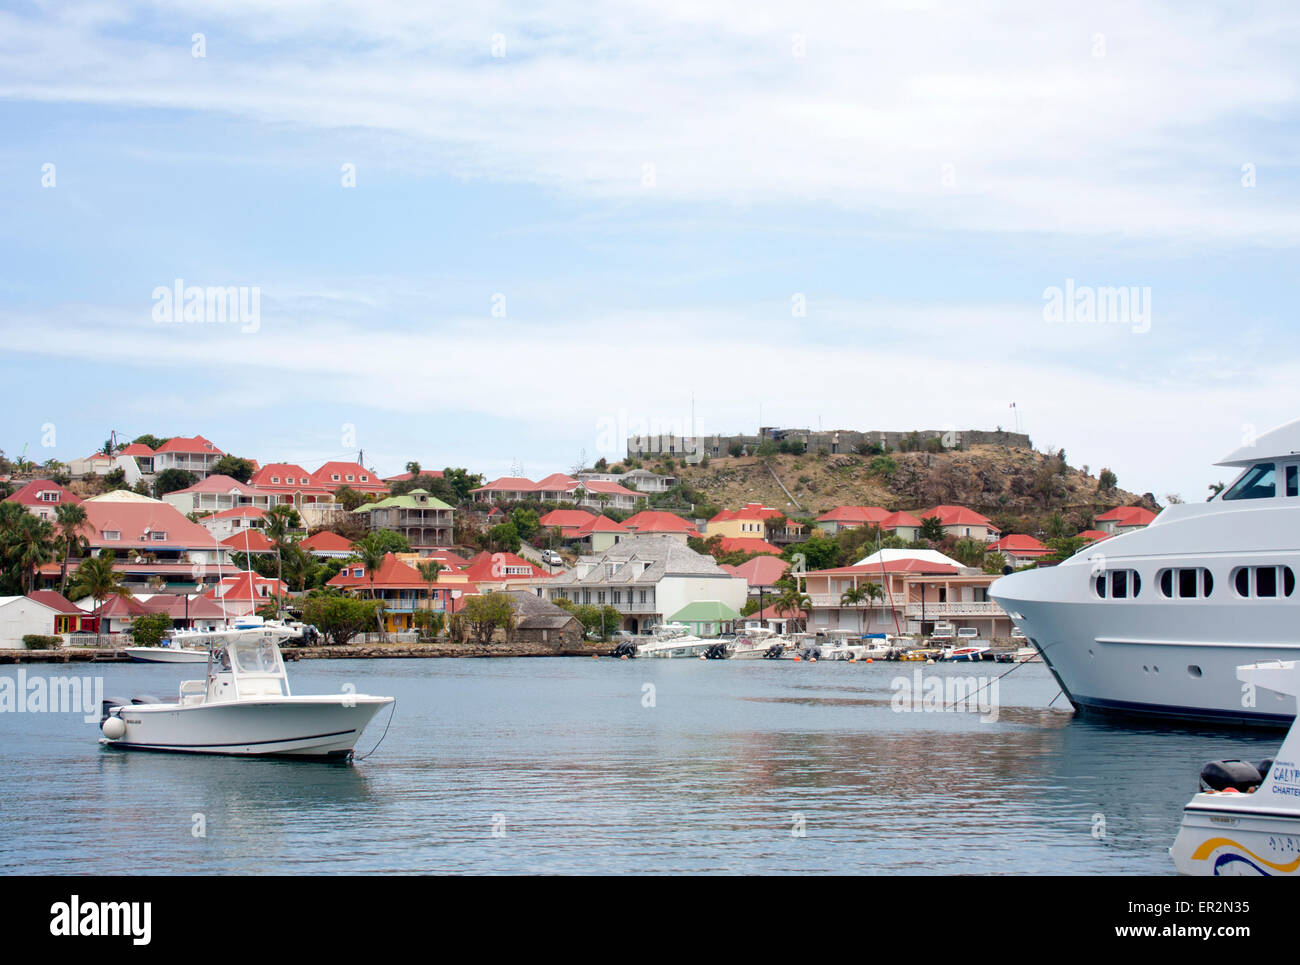 Bateaux et yachts ancrés dans le port de Gustavia, Saint Barth Banque D'Images